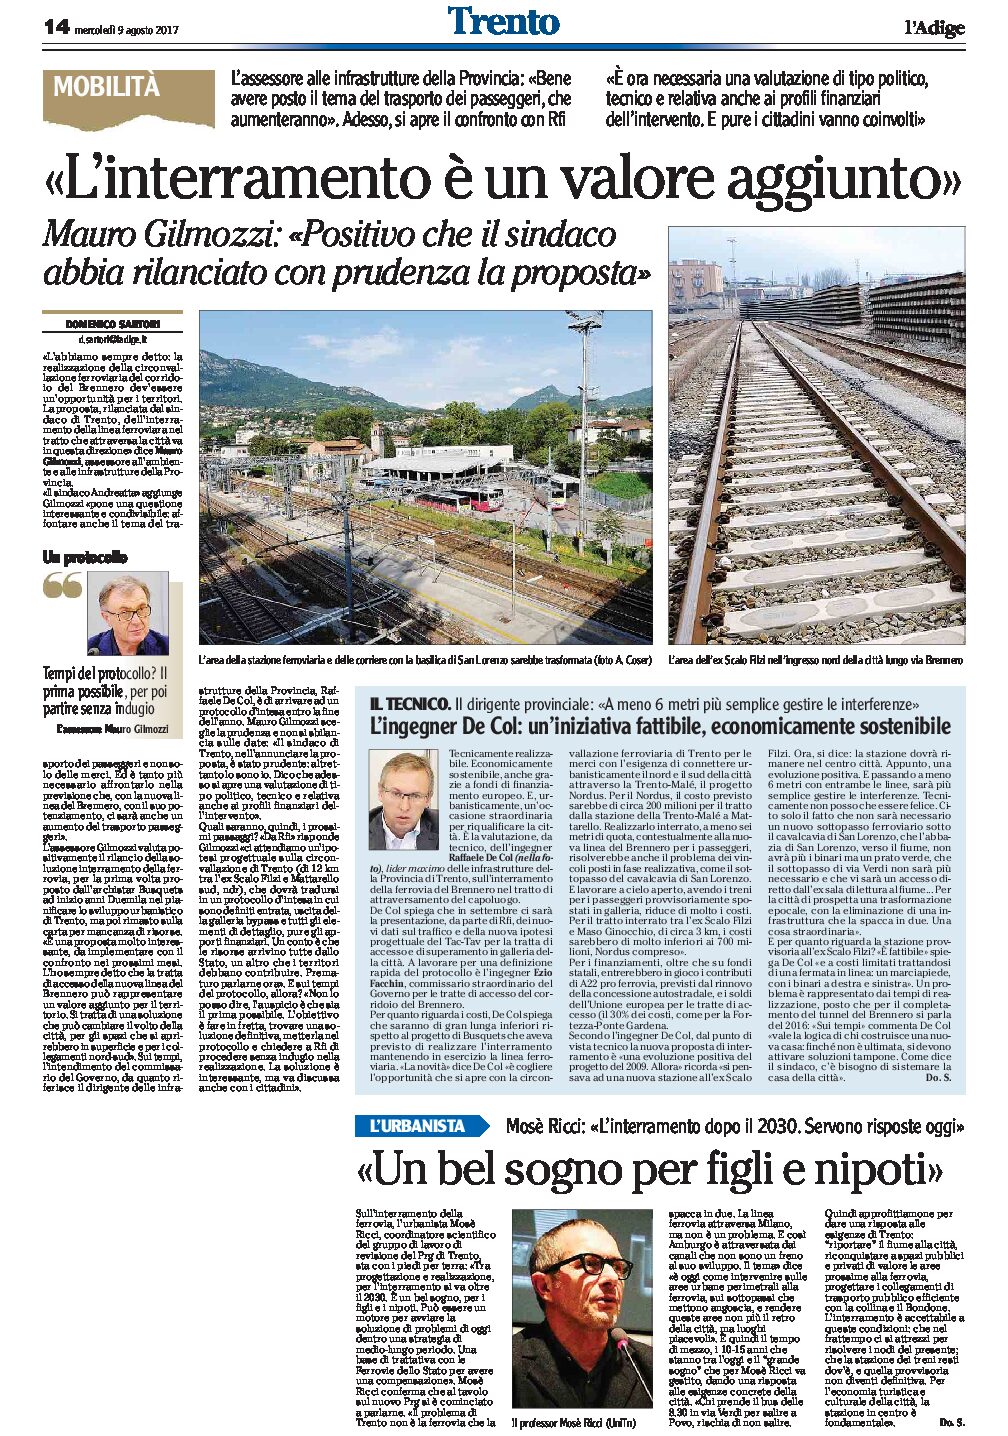 Trento, interramento della ferrovia: Gilmozzi “un valore aggiunto”, Ricci “un bel sogno”